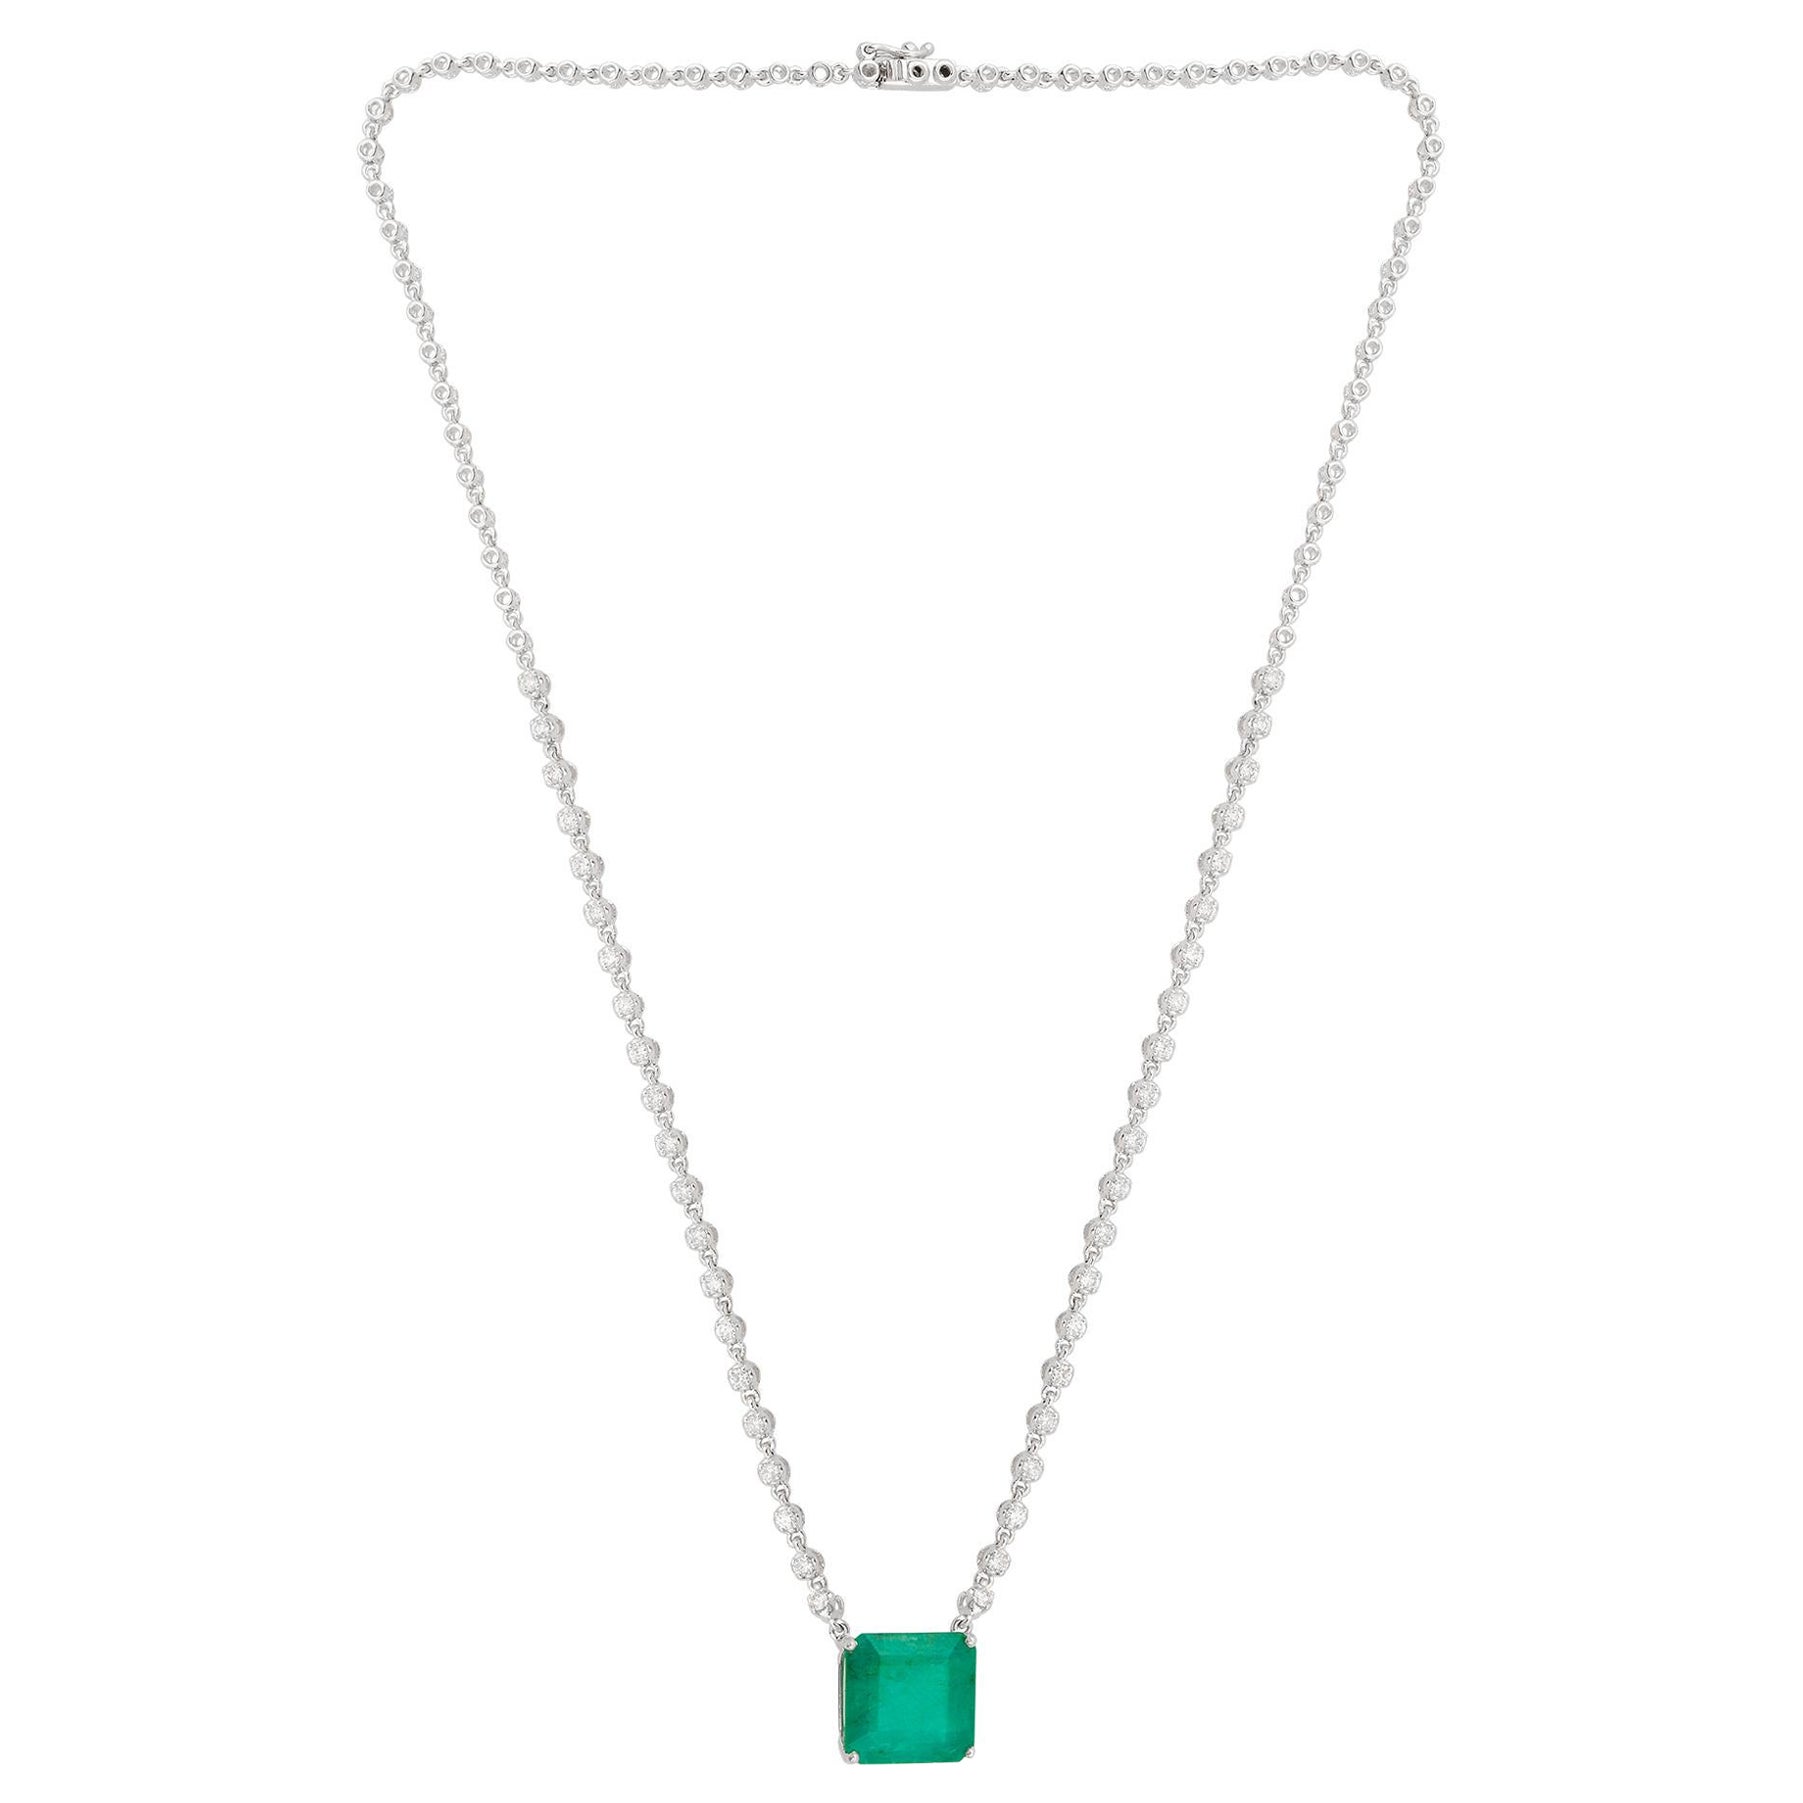 Sambischer Smaragd Edelstein Charme Halskette Diamant 18 Karat Weißgold Feiner Schmuck